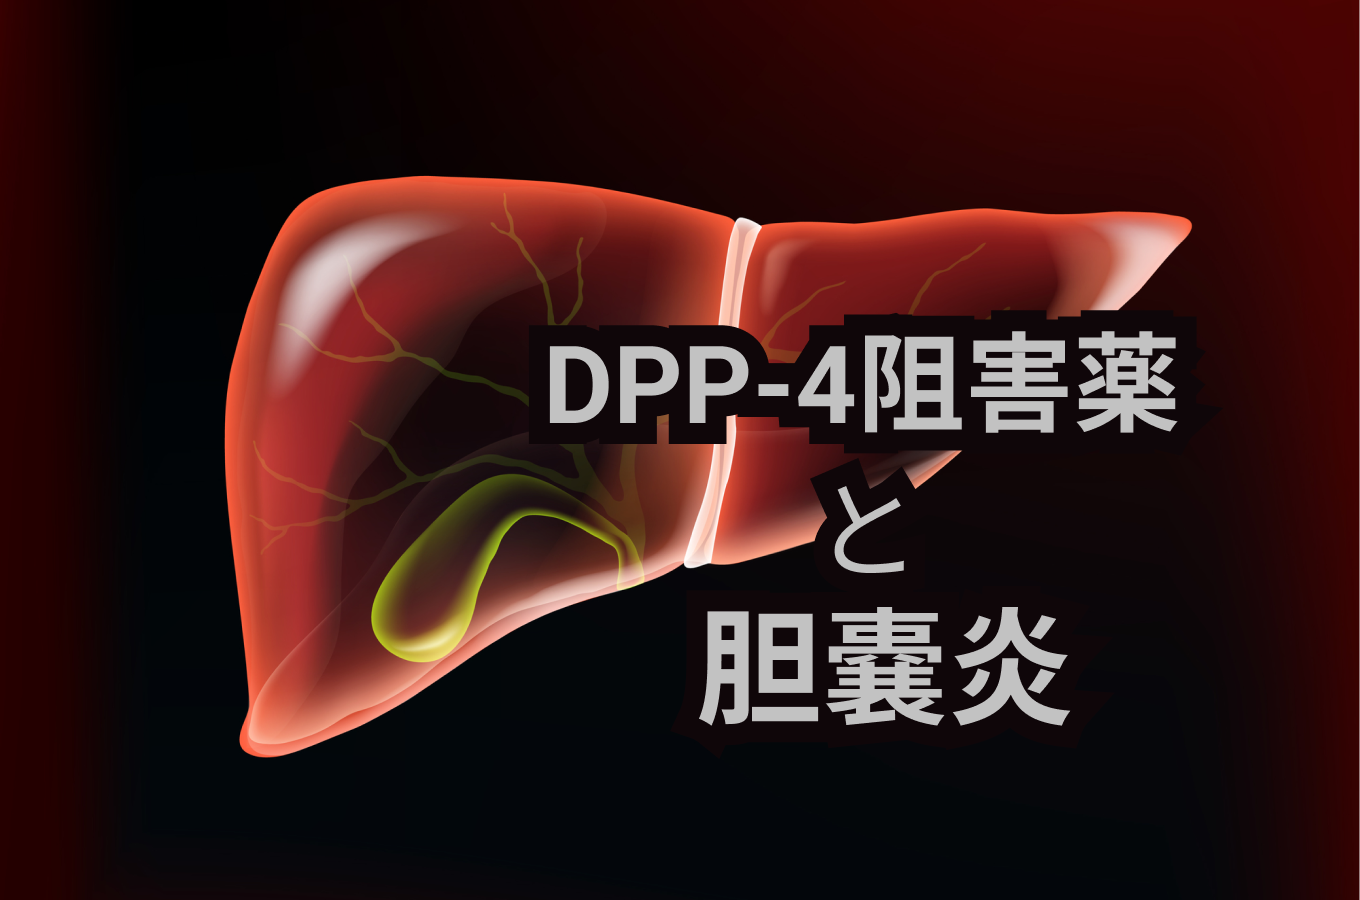 【BMJ】DPP-4阻害薬による長期治療は ｢胆嚢炎｣ のリスク増加と有意に関連